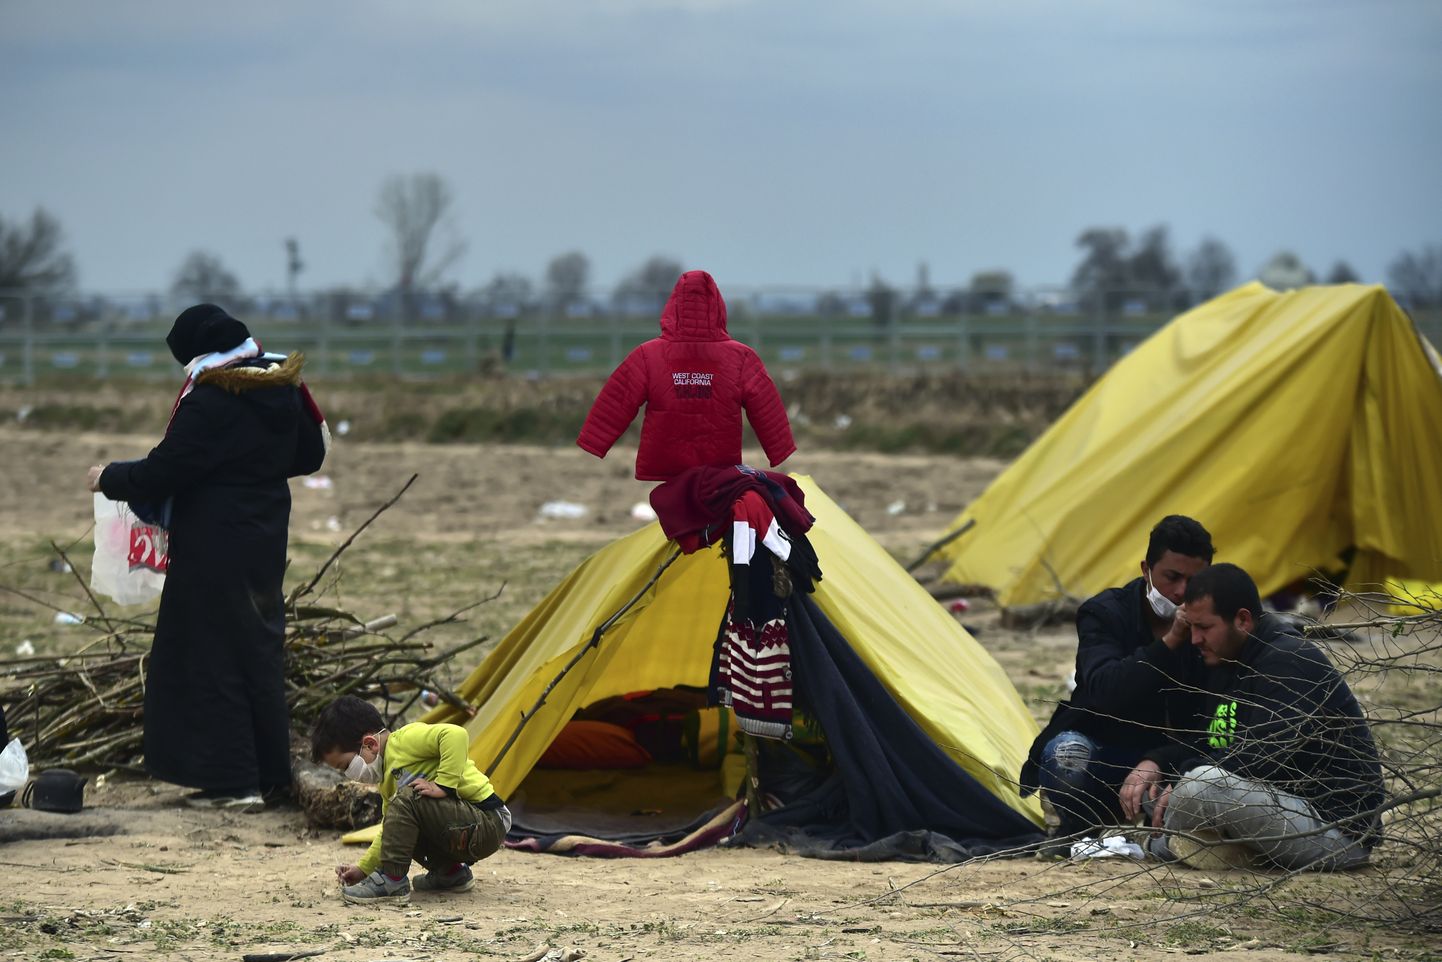 Migrandid telgiga Kreeka piiri lähistel Türgis Pazarkules. Nädalavahetusel toimetasid Türgi võimud inimesed sealt kandist ära, kuid pandeemia möödudes ilmselt pingestub olukord piiril taas.